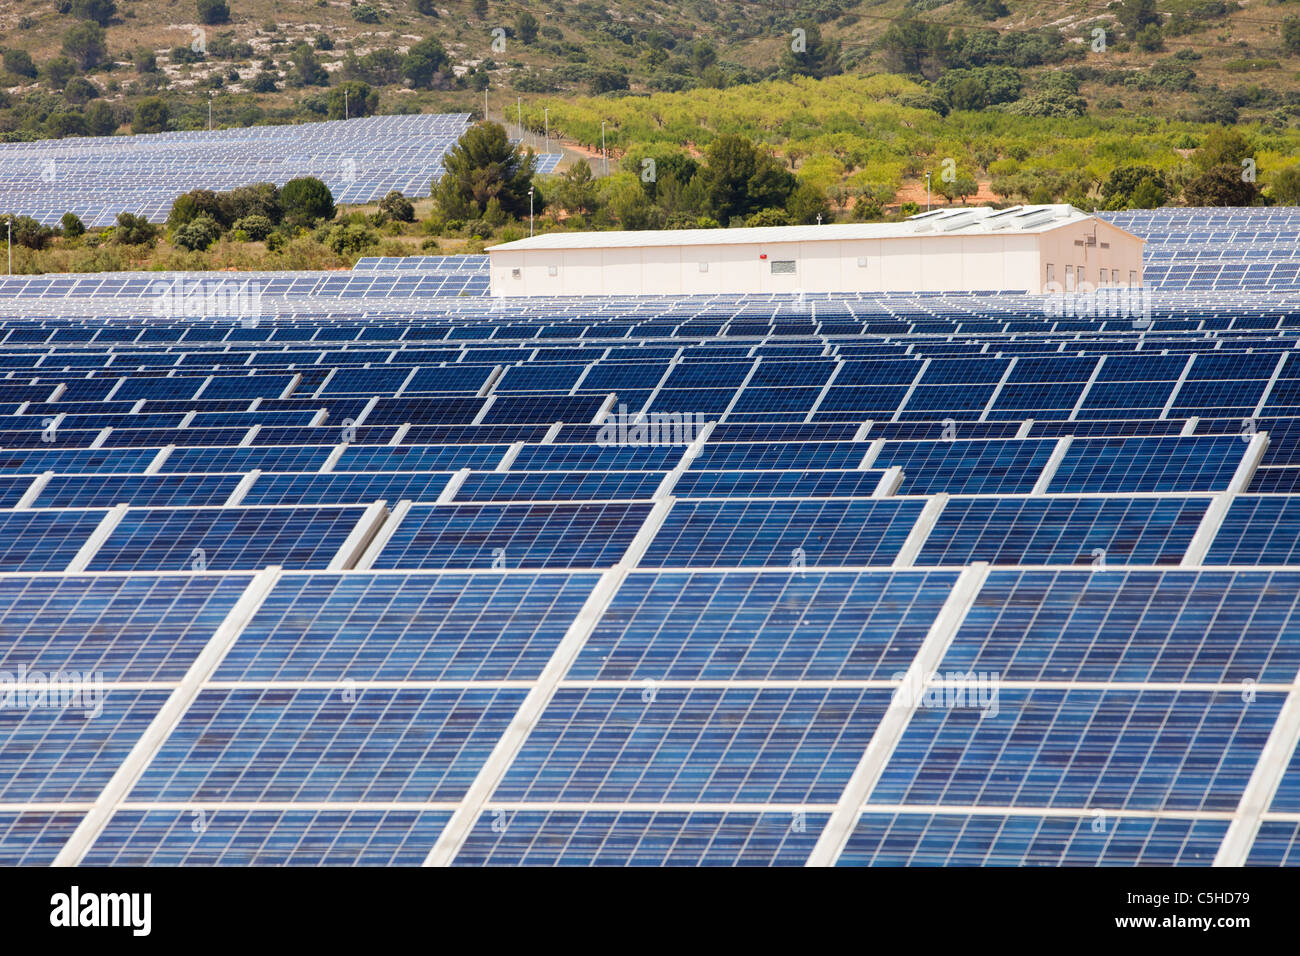 Photovoltaic panels at Beneixama solar power station, Beneixama, Mercia, Spain. Stock Photo